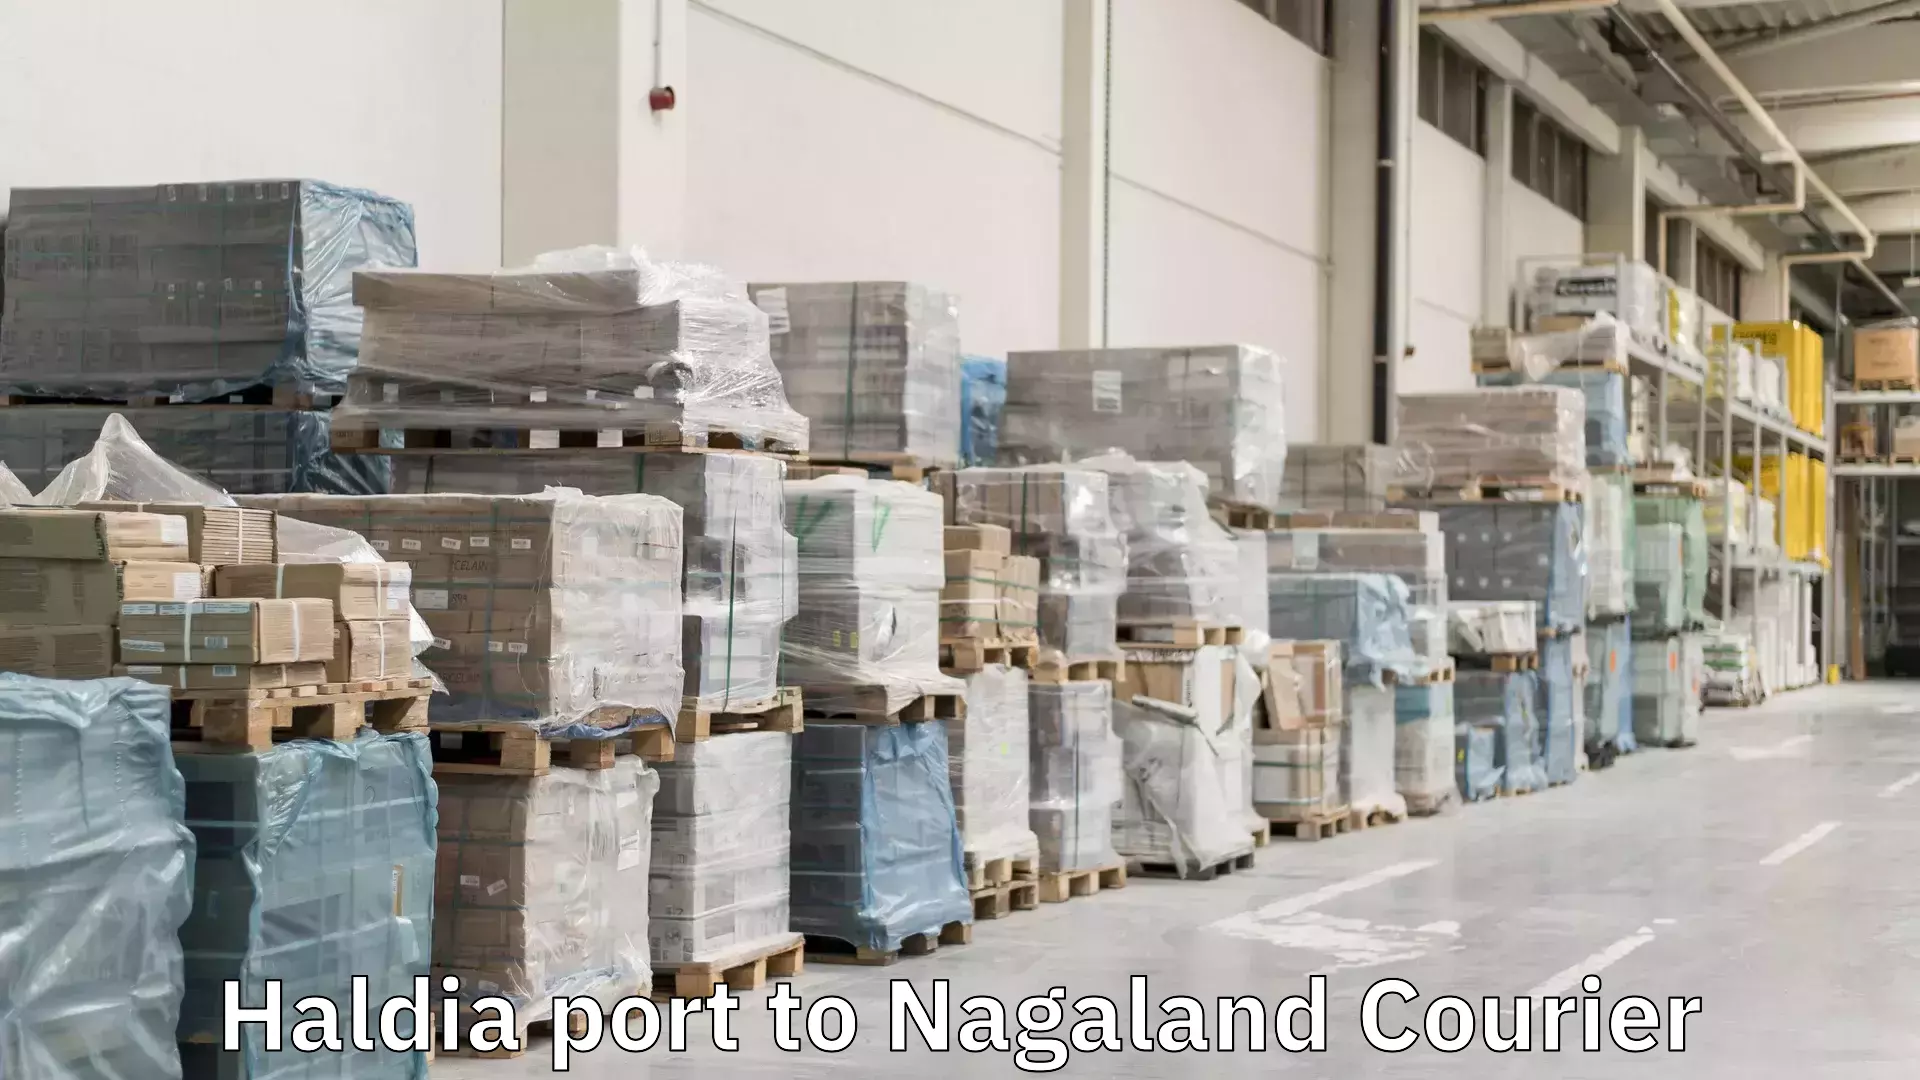 Courier app Haldia port to Nagaland